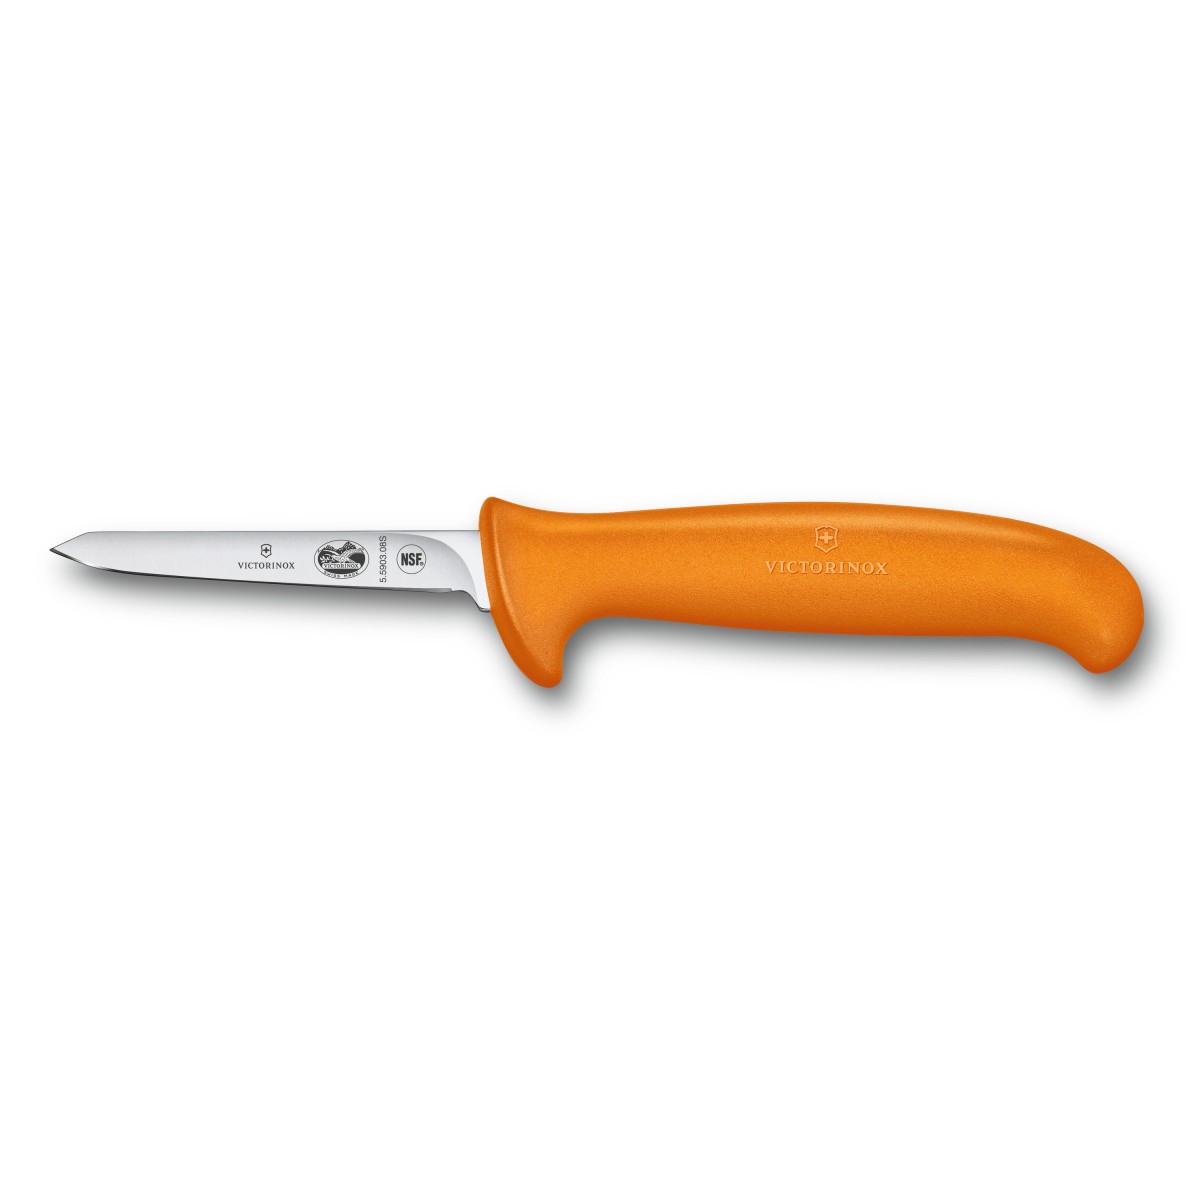 Victorinox Nůž Fibrox Poultry Knife, orange, small, 8 cm